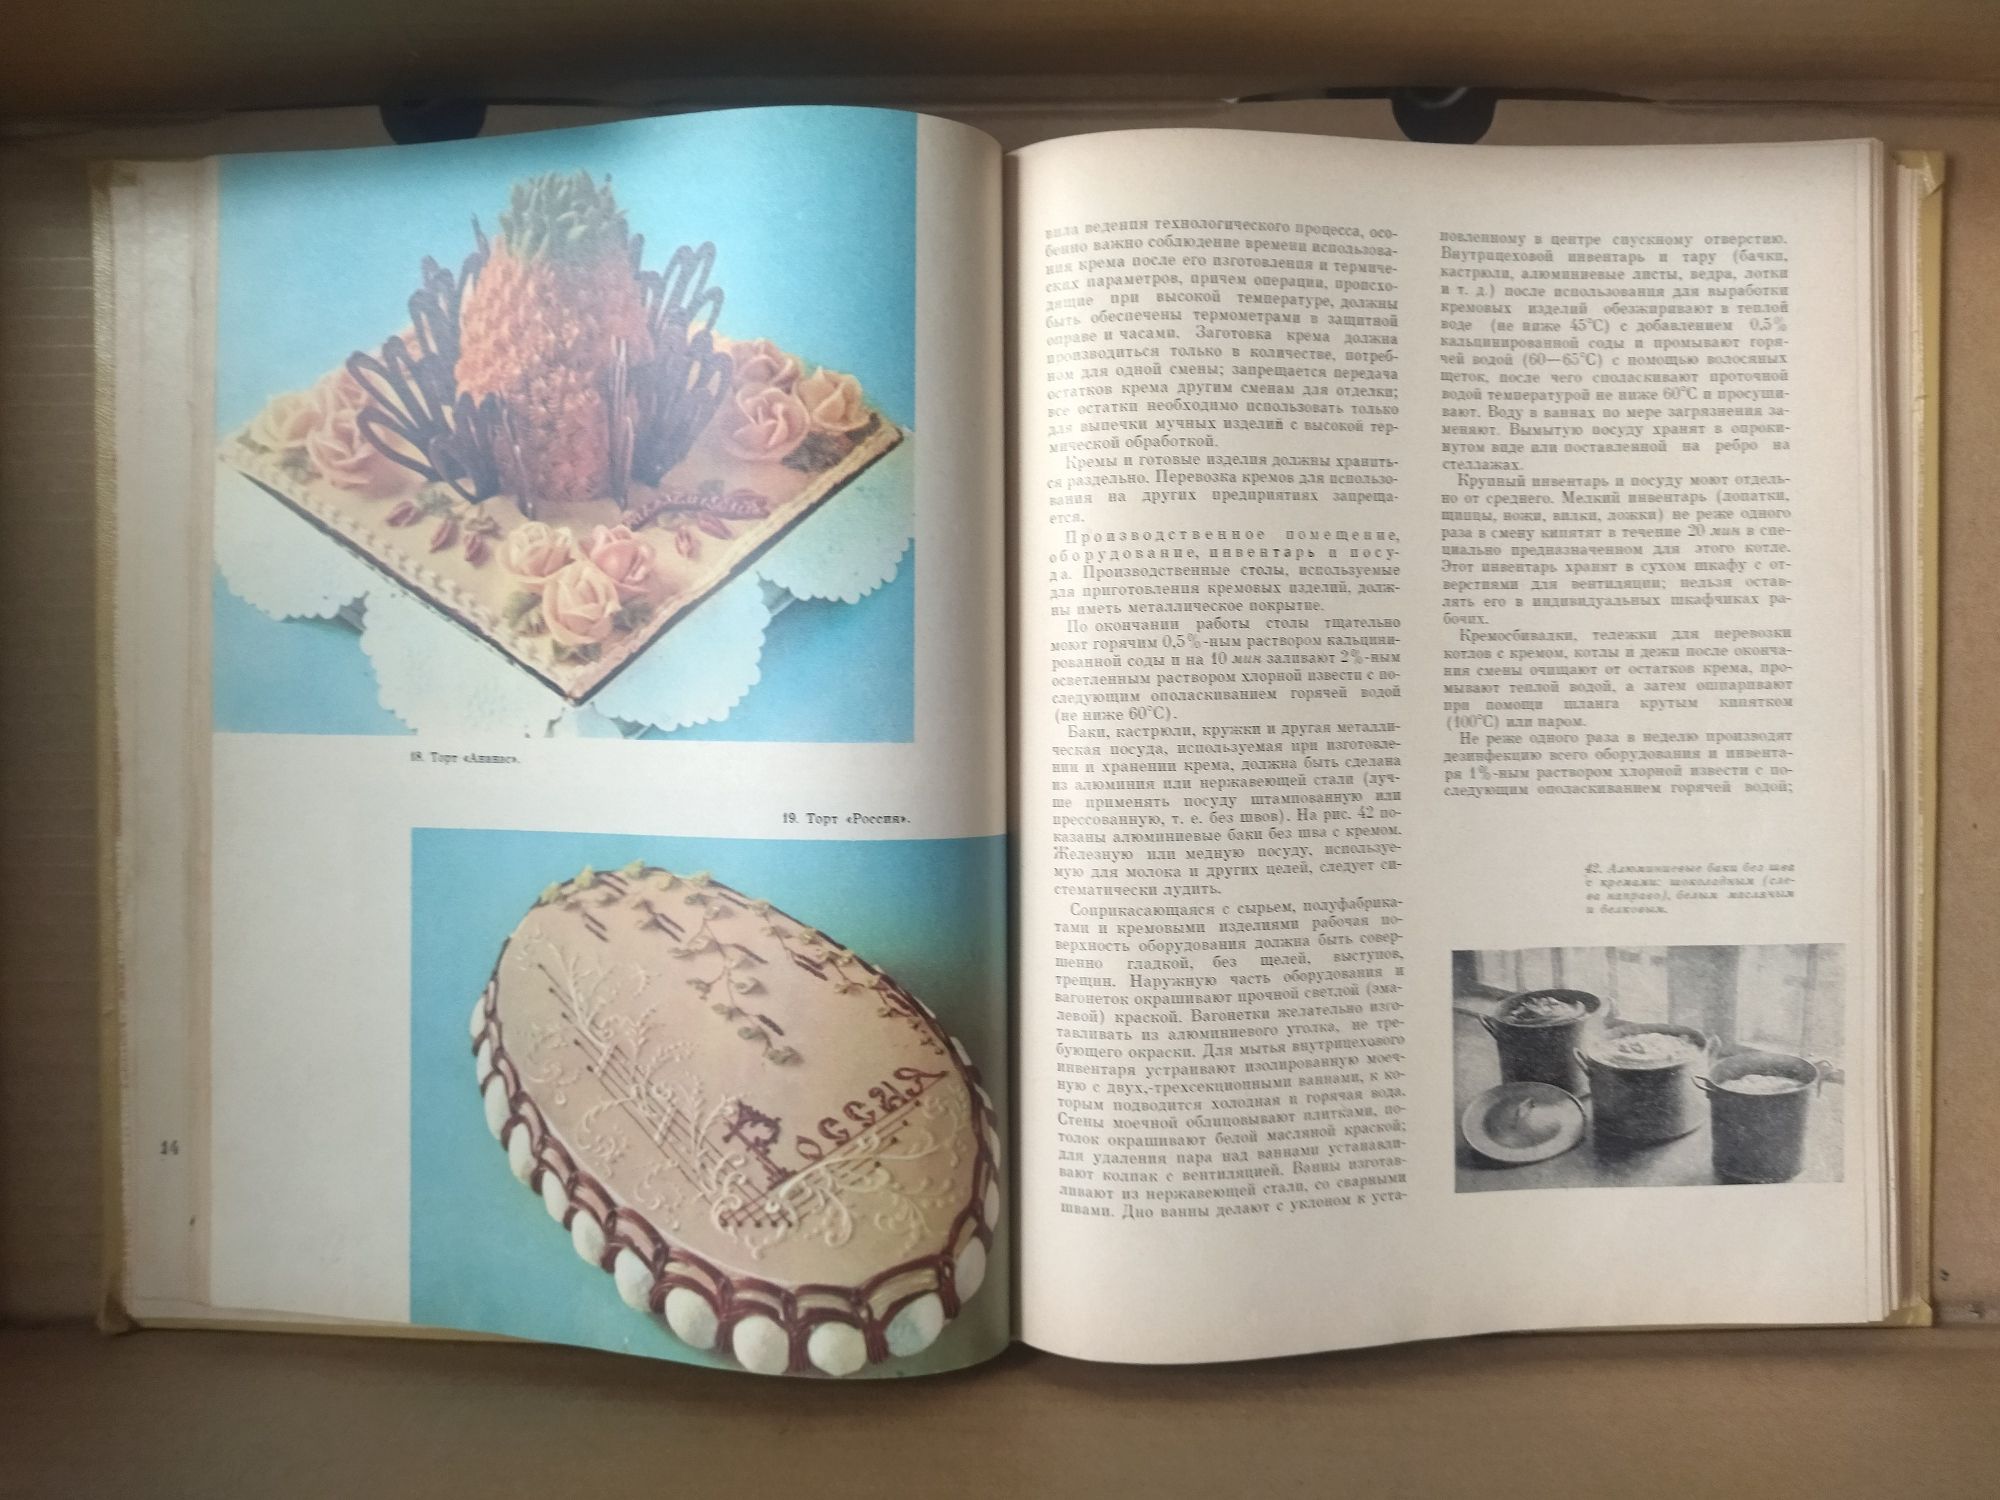 Книга производство пирожных и тортов 1974